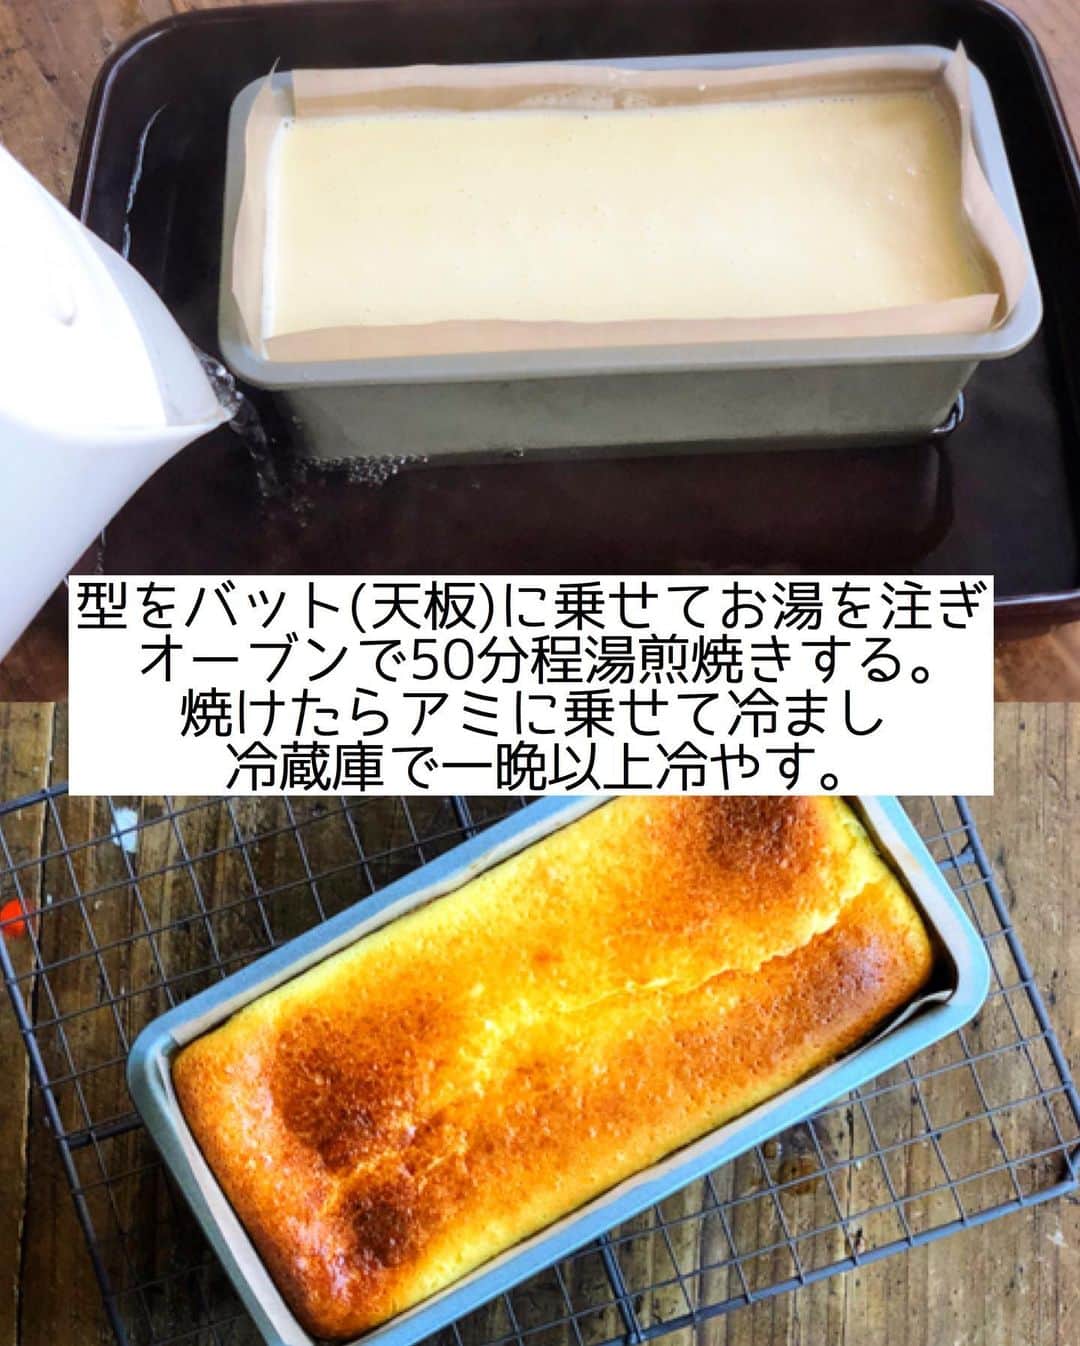 Mizuki【料理ブロガー・簡単レシピ】さんのインスタグラム写真 - (Mizuki【料理ブロガー・簡単レシピ】Instagram)「・﻿ 【#レシピ 】ーーーーーーーーーー﻿ 混ぜて焼くだけ！チーズテリーヌ﻿ ーーーーーーーーーーーーーーーー﻿ ﻿ ﻿ ﻿ おはようございます(*^^*)﻿ ﻿ 今日ご紹介させていただくのは﻿ \\ チーズテリーヌ //﻿ 身近な材料だけを使用して﻿ とろける食感に仕上げました♩﻿ ﻿ しかも、作り方は超簡単♡﻿ 混ぜて焼くだけ(*´艸`)﻿ ﻿ これ失敗なく作れるので﻿ お気軽にお試し下さいね(*^^*)﻿ ﻿ ﻿ ﻿ ＿＿＿＿＿＿＿＿＿＿＿＿＿＿＿＿＿＿＿＿﻿ 【18cmパウンド型1台分】﻿ クリームチーズ...200g﻿ ●砂糖...70g﻿ ●卵...2個﻿ ●レモン汁...小2﻿ ●プレーンヨーグルト...100g﻿ ●生クリーム...100ml﻿ 薄力粉...大1﻿ ﻿ (準備)クリームチーズは室温に戻して柔らかくする。型にシートを敷く。湯煎焼き用のお湯を沸かす。オーブンを180度に予熱する。﻿ 1.ボウルにクリームチーズを入れて泡立て器で柔らかく練り、●を上から順に加えてその都度よく混ぜる。最後に薄力粉をふるい入れて更に混ぜ、型に注ぐ。﻿ 2. 型をバット(又は天板)に乗せてお湯を注ぎ、予熱したオーブンで50分程湯煎焼きする。焼けたらアミに乗せて冷まし、冷蔵庫で一晩以上冷やす。﻿ ￣￣￣￣￣￣￣￣￣￣￣￣￣￣￣￣￣￣￣￣﻿ ﻿ ﻿ ﻿ 《ポイント》﻿ ♦︎クリームチーズは十分に柔らかくしておいて下さい♩レンチンしてもOK☆﻿ ♦︎薄力粉は茶こしでふるうと◎﻿ ♦︎湯煎焼きのお湯は、型が1.5cm浸かる程度に入れておくと◎﻿ ♦︎一晩〜二晩寝かせるとより美味しくなります♩﻿ ﻿ ﻿ ﻿ ﻿ ﻿ ﻿ ﻿ ﻿ 📕新刊予約開始しました📕﻿ 【ラクしておいしい！#1品晩ごはん 】﻿ ￣￣￣￣￣￣￣￣￣￣￣￣￣￣￣￣￣﻿ 私たちだってヘトヘトな日がある•••﻿ 毎日何品も作っていられない•••﻿ もうごはんに悩みたくない😢﻿ そう思うことってありませんか？﻿ そんな時、1品ごはんはいかがでしょう？﻿ というご提案です✨﻿ ﻿ ﻿ 【1品ごはん】は﻿ 副菜いらずで全てがシンプル！﻿ ￣￣￣￣￣￣￣￣￣￣￣￣￣￣￣￣￣￣﻿ 一品つくるだけでいいから﻿ 献立を考えなくてよし！﻿ ￣￣￣￣￣￣￣￣￣￣￣￣￣￣￣￣￣￣﻿ 悩まない、疲れない、﻿ 気力や時間がなくてもなんとかなる！﻿ ￣￣￣￣￣￣￣￣￣￣￣￣￣￣￣￣￣￣﻿ そんな頼りになる﻿ 便利なお助けごはんです☺️💕﻿ (ハイライトに🔗貼っています✨)﻿ ￣￣￣￣￣￣￣￣￣￣￣￣￣￣￣￣￣﻿ ﻿ ﻿ ﻿ ﻿ ﻿ ⭐️発売中⭐️﻿ ＿＿＿＿＿＿＿＿＿＿＿＿＿＿＿＿＿＿﻿ しんどくない献立、考えました♩﻿ \15分でいただきます/﻿ 📕#Mizukiの2品献立 📕﻿ ﻿ 和食をもっとカジュアルに♩﻿ \毎日のごはんがラクになる/﻿ 📘#Mizukiの今どき和食 📘﻿ ﻿ ホケミレシピの決定版♩﻿ \はじめてでも失敗しない/﻿ 📙ホットケーキミックスのお菓子 📙﻿ ﻿ NHKまる得マガジンテキスト☆﻿ ホットケーキミックスで﻿ 📗絶品おやつ&意外なランチ📗﻿ ￣￣￣￣￣￣￣￣￣￣￣￣￣￣￣￣￣￣﻿ ﻿ ﻿ ﻿ ＿＿＿＿＿＿＿＿＿＿＿＿＿＿＿＿＿＿﻿ レシピを作って下さった際や﻿ レシピ本についてのご投稿には﻿ タグ付け( @mizuki_31cafe )して﻿ お知らせいただけると嬉しいです😊💕﻿ ￣￣￣￣￣￣￣￣￣￣￣￣￣￣￣￣￣￣﻿ ﻿ ﻿ ﻿ ﻿ #ケーキ#チーズケーキ#チーズテリーヌ#クリスマス#Mizuki#簡単レシピ#時短レシピ#節約レシピ#料理#フーディーテーブル#マカロニメイト#おうちごはん#デリスタグラマー#料理好きな人と繋がりたい#食べ物#料理記録#おうちごはんlover#写真好きな人と繋がりたい#foodpic#cooking#recipe#lin_stagrammer#foodporn#yummy#f52grams#チーズテリーヌm」12月21日 7時12分 - mizuki_31cafe